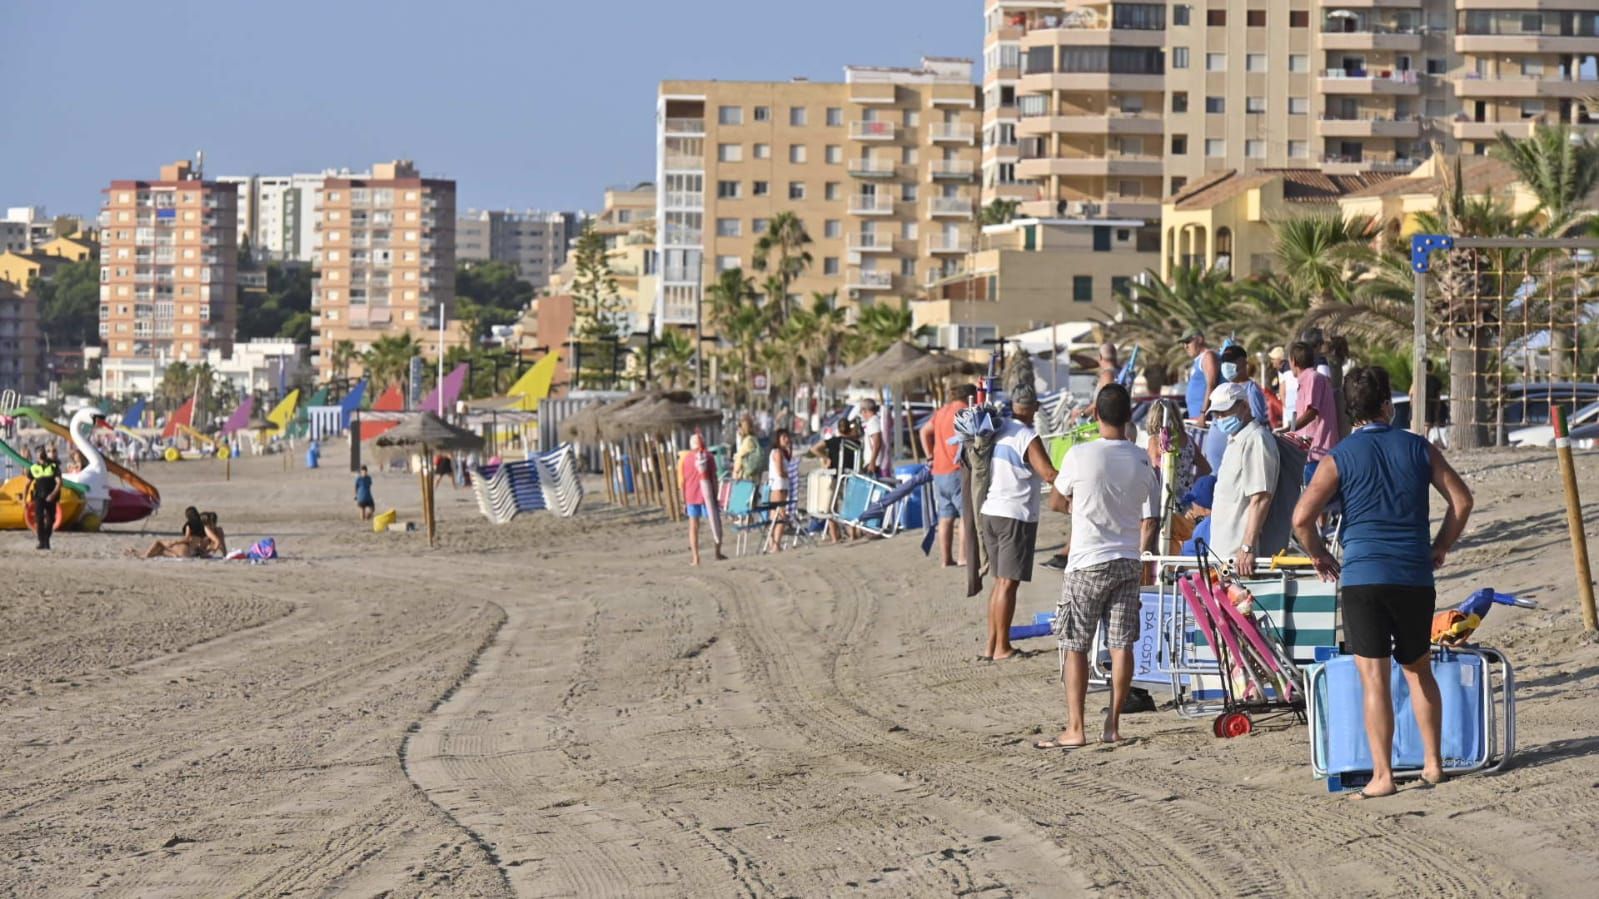 Los agentes actúan para evitar que los usuarios reserven primera línea de playa con las sombrillas